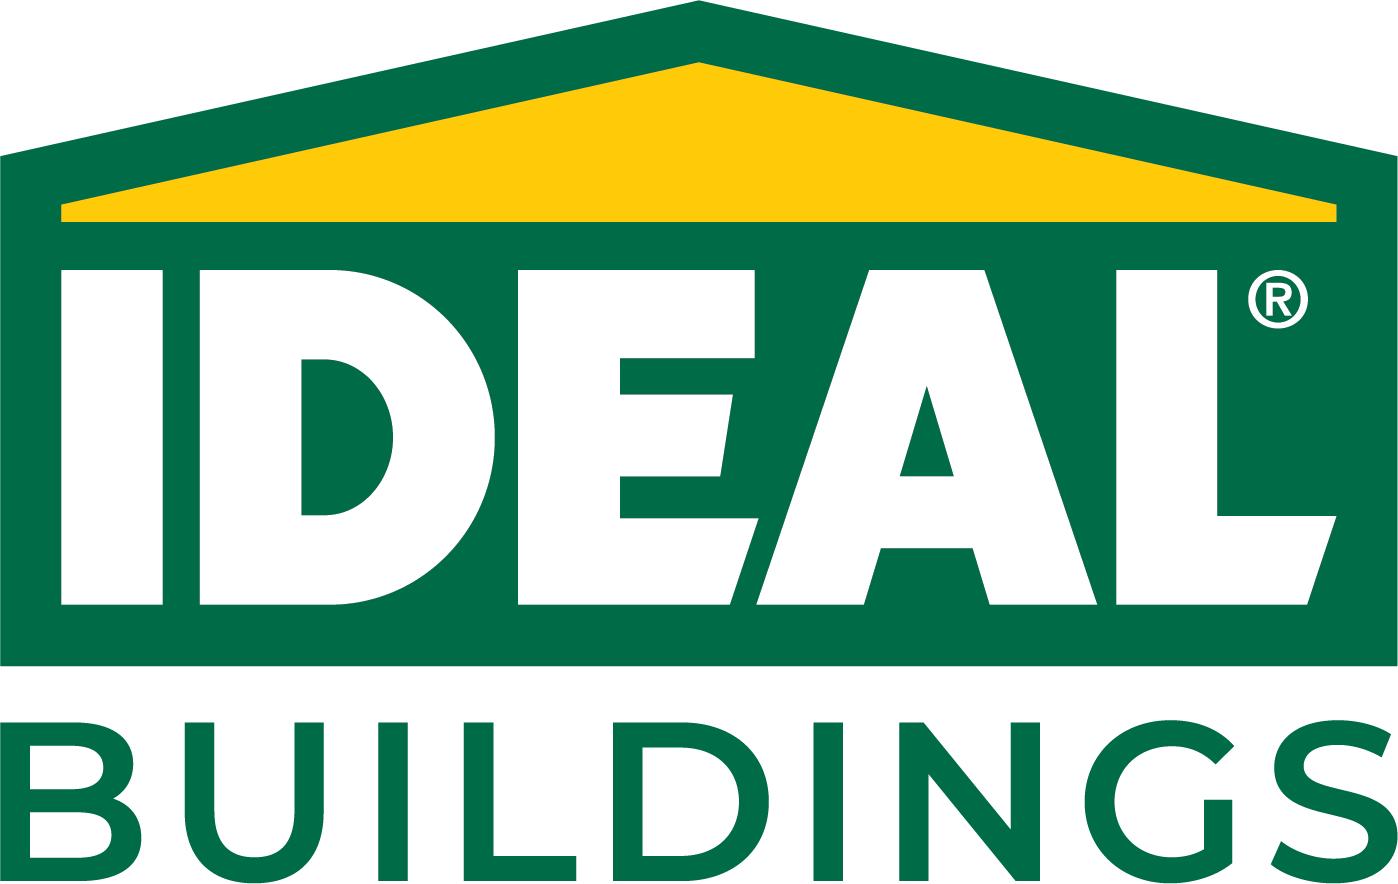 Ideal-Logo_CMYK-1